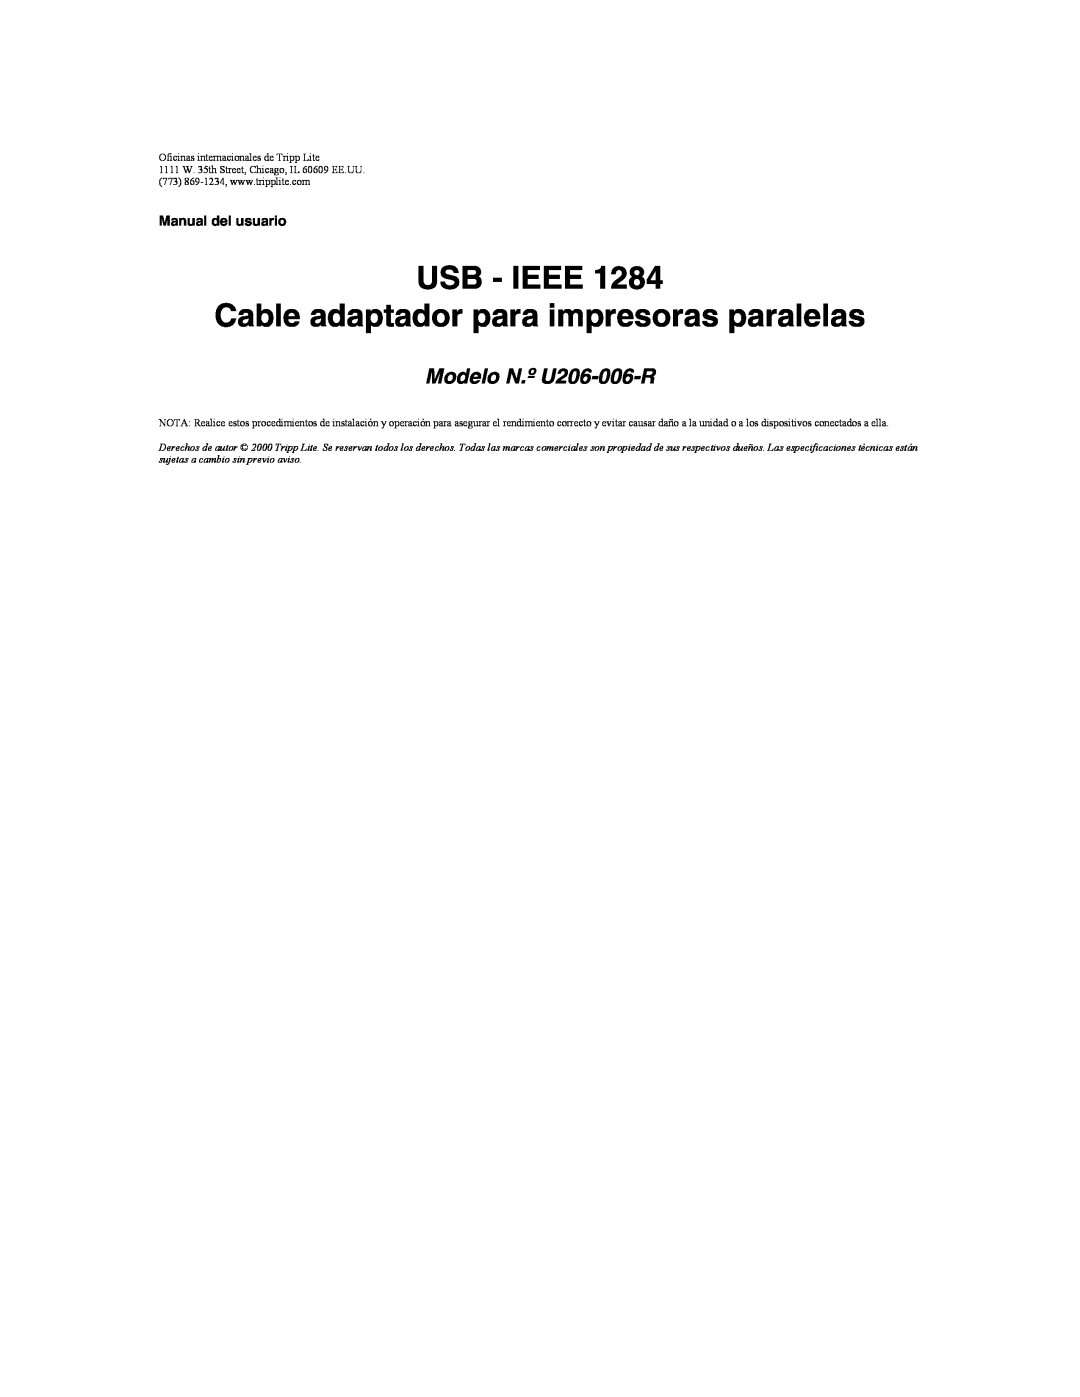 Tripp Lite user manual USB - IEEE Cable adaptador para impresoras paralelas, Modelo N.º U206-006-R, Manual del usuario 